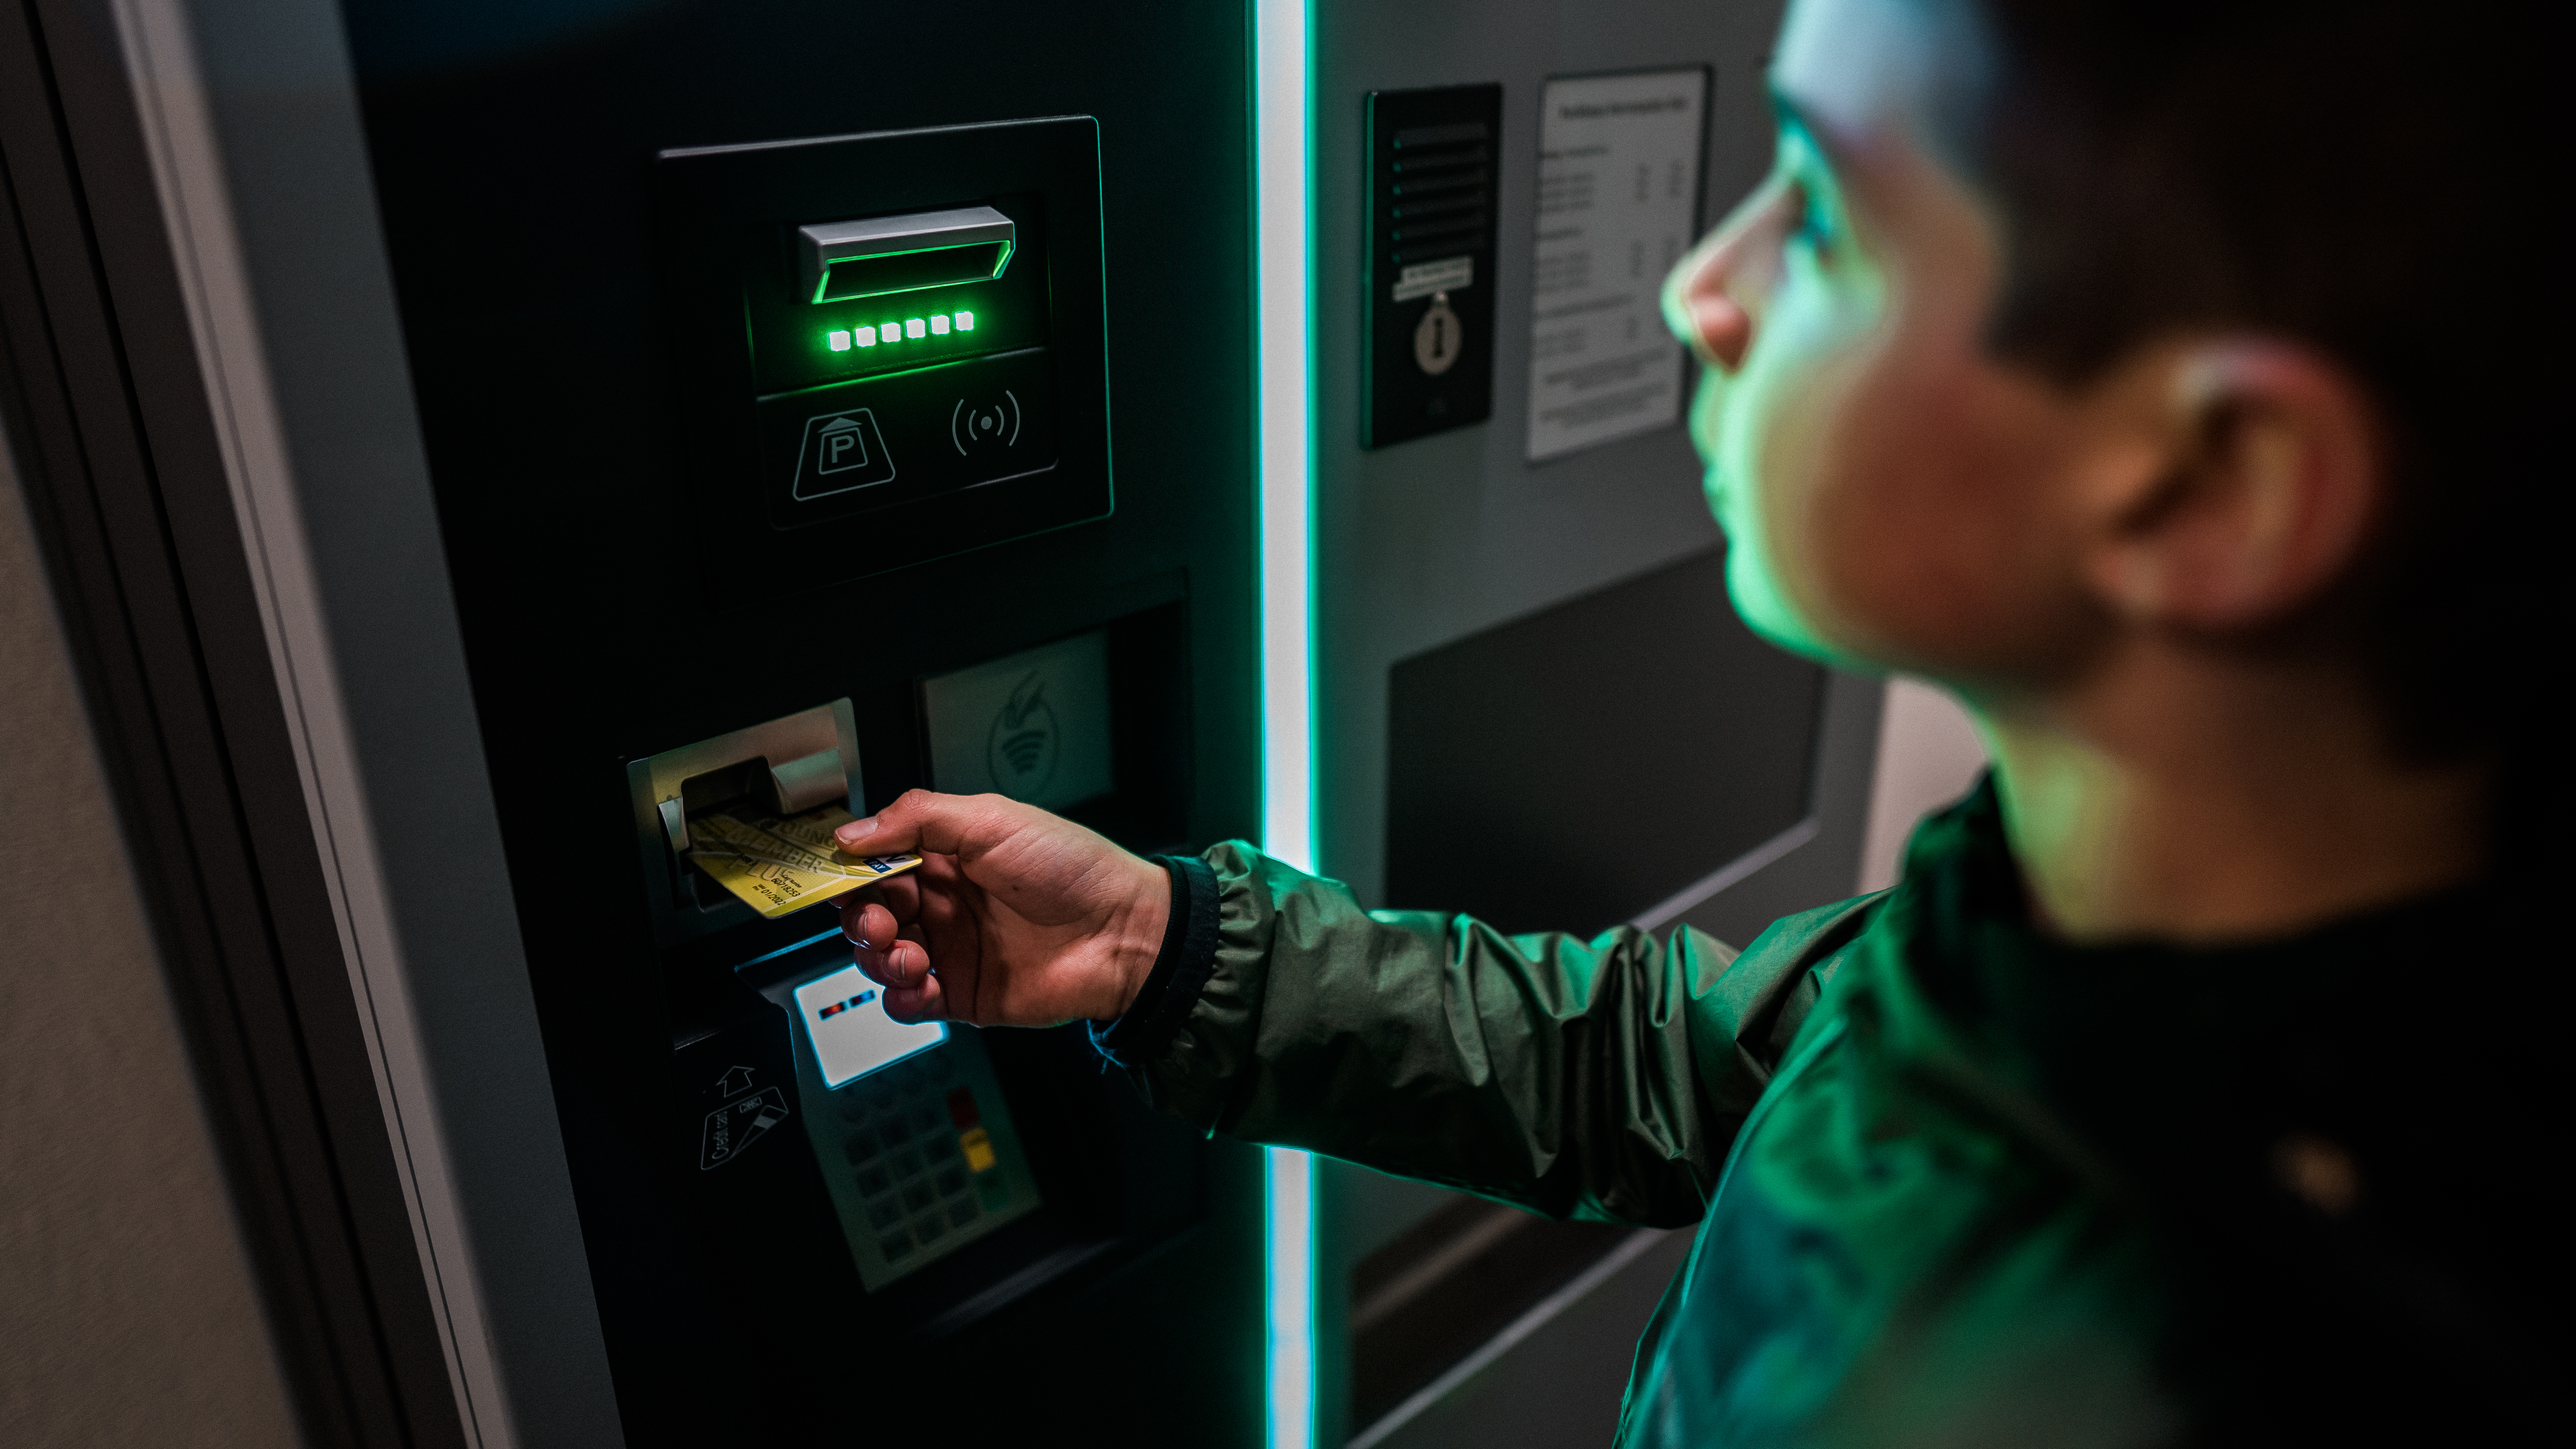 Jangan tinggalkan mesin ATM jika kartu ATM tidak bisa tarik tunai.